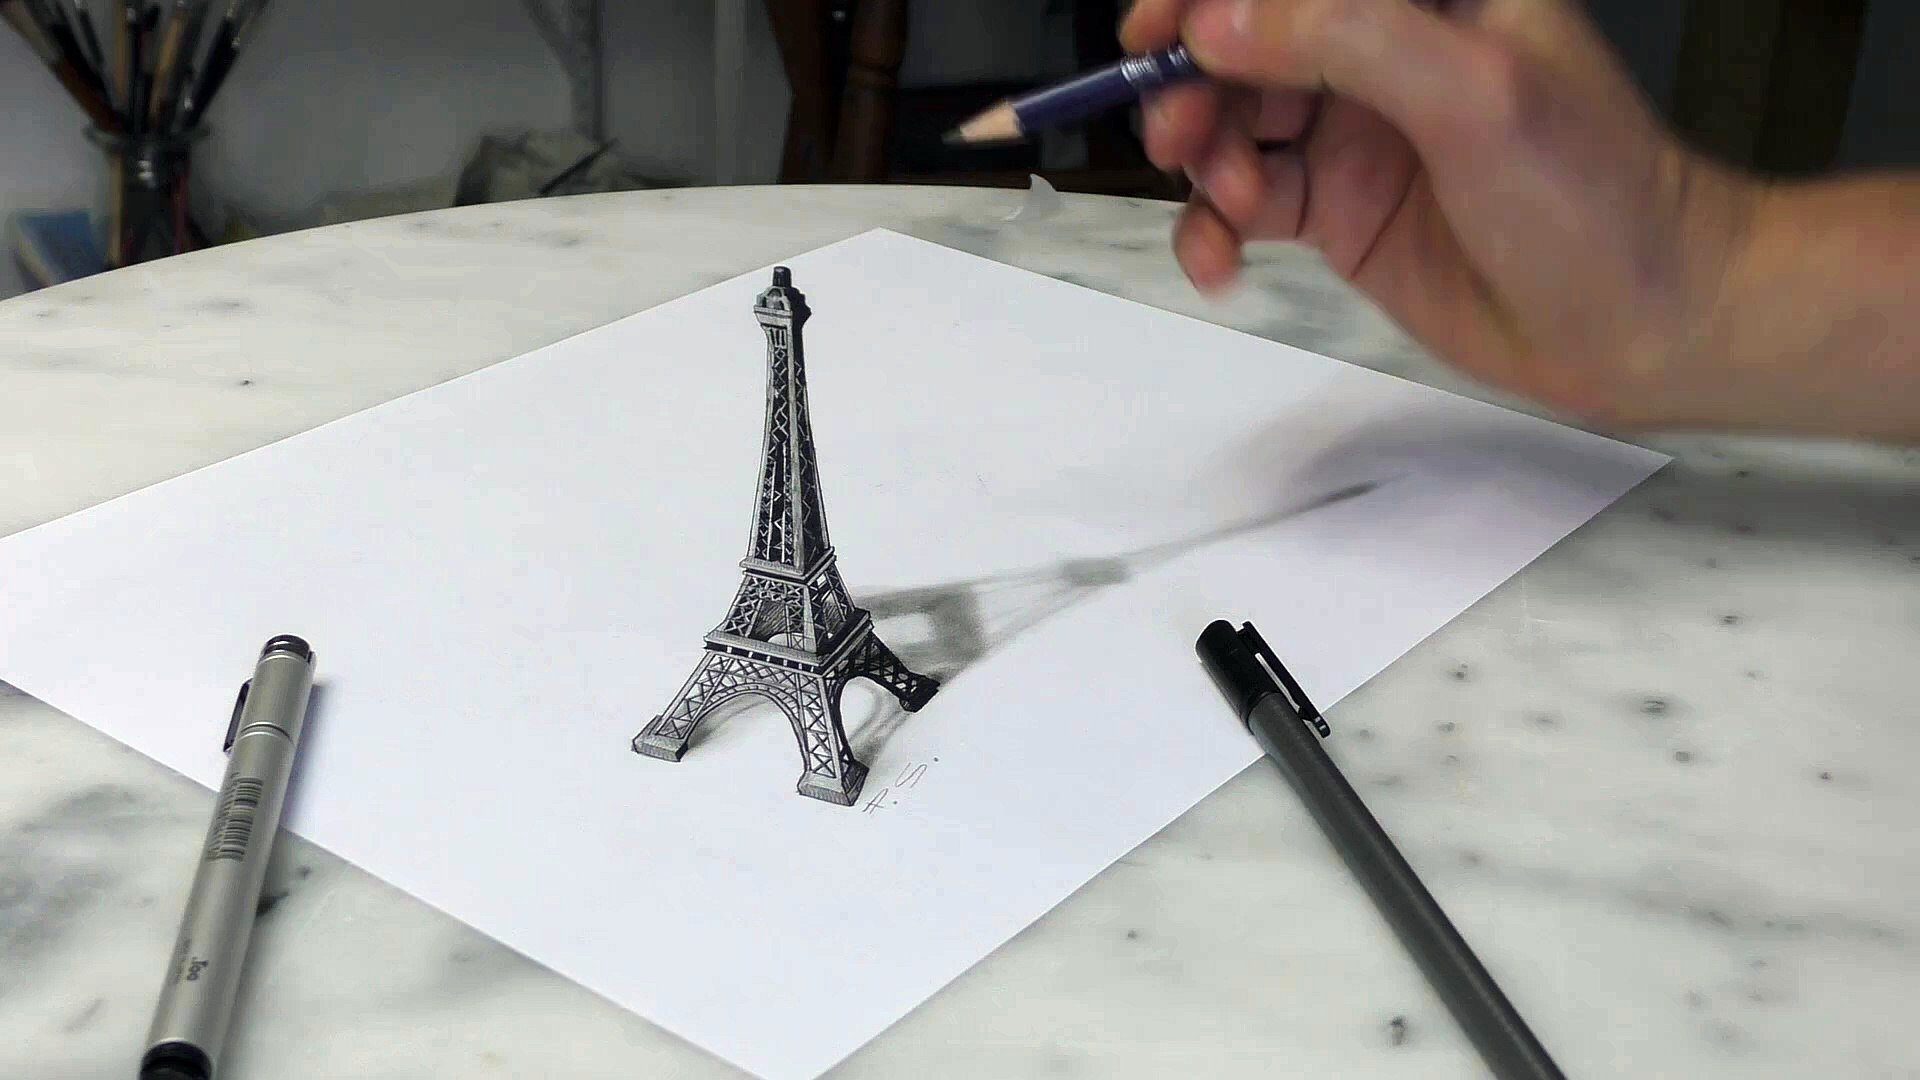 Объёмное рисование карандашом